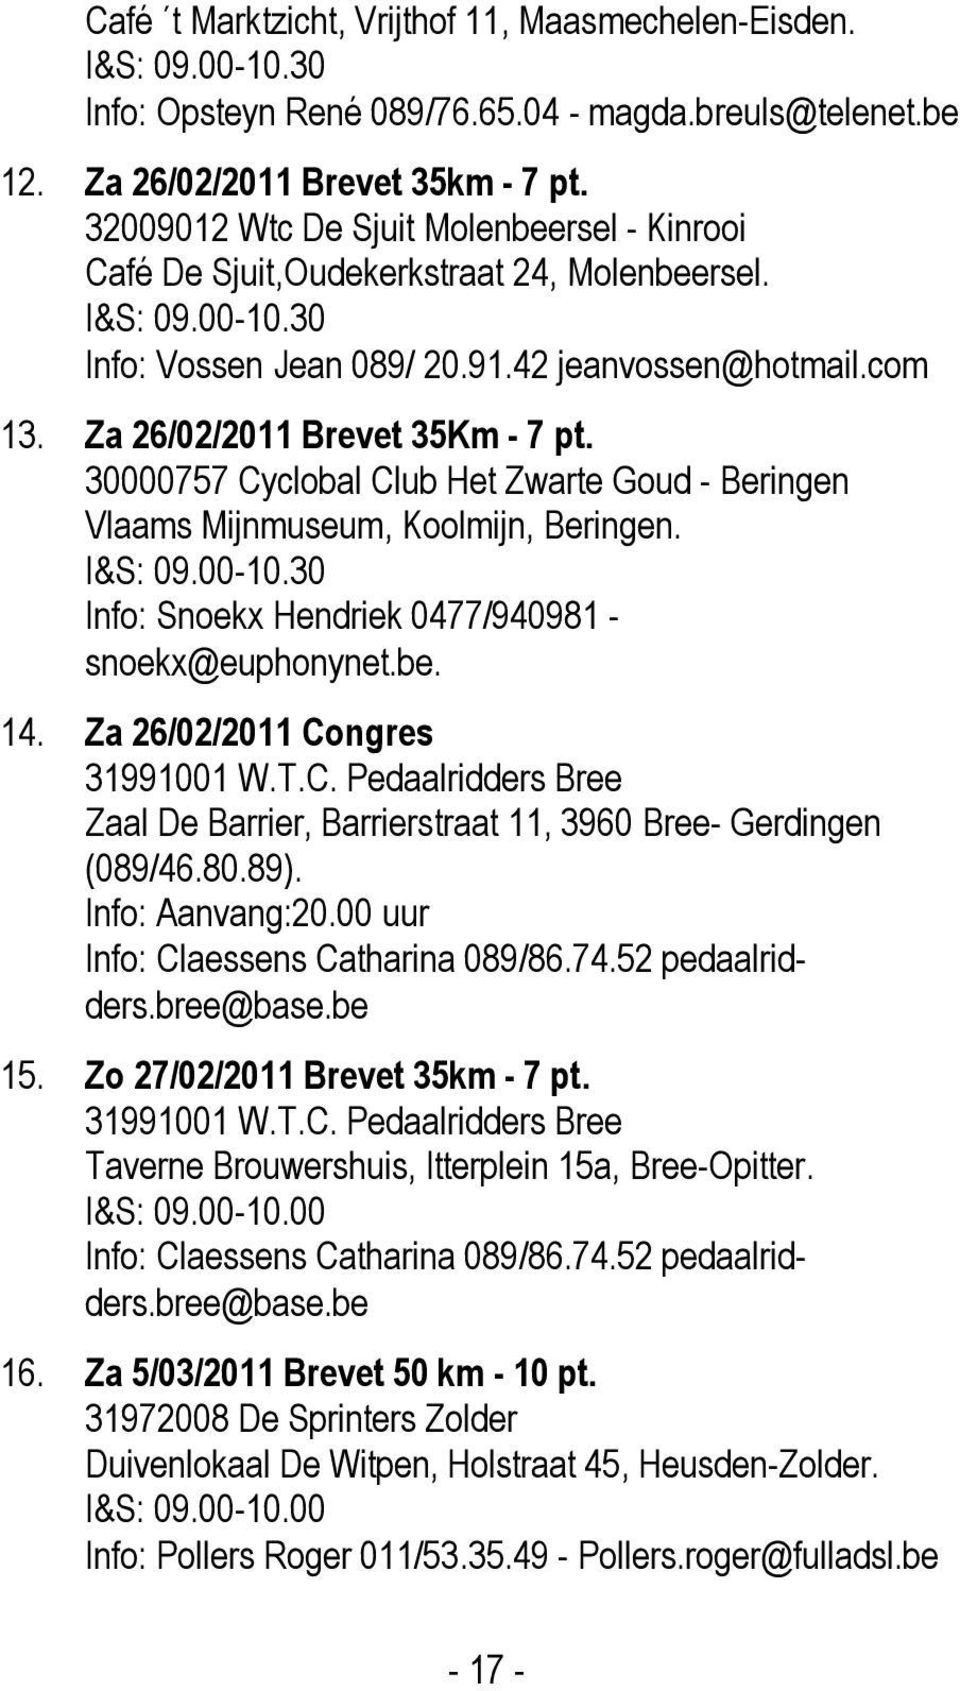 Za 26/02/2011 Brevet 35Km - 7 pt. 30000757 Cyclobal Club Het Zwarte Goud - Beringen Vlaams Mijnmuseum, Koolmijn, Beringen. I&S: 09.00-10.30 Info: Snoekx Hendriek 0477/940981 - snoekx@euphonynet.be.